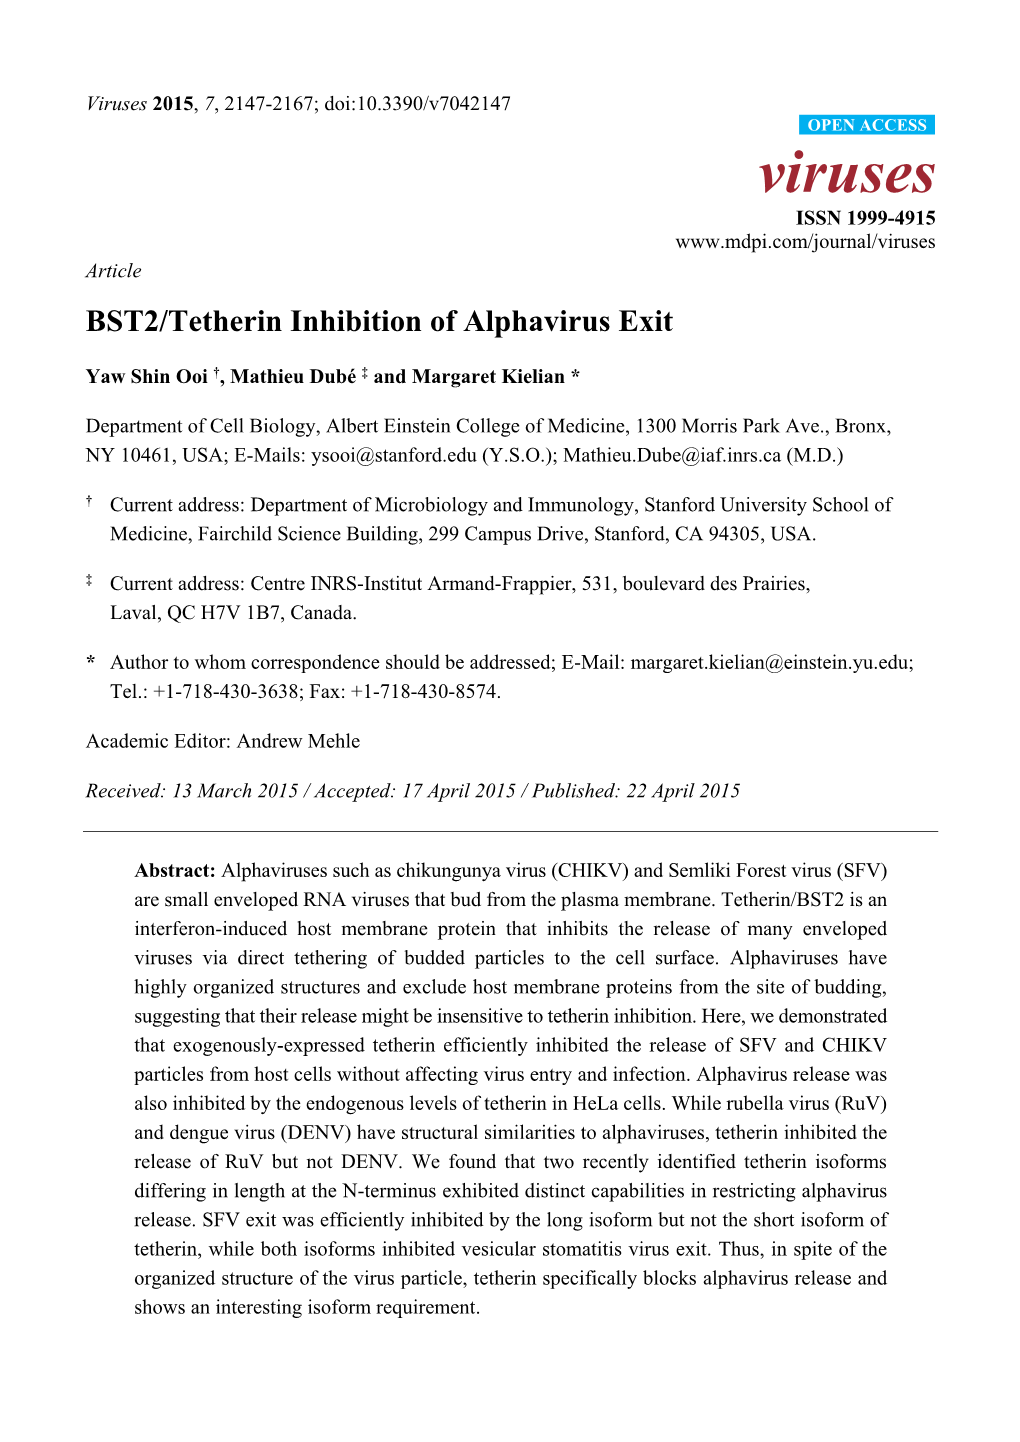 BST2/Tetherin Inhibition of Alphavirus Exit